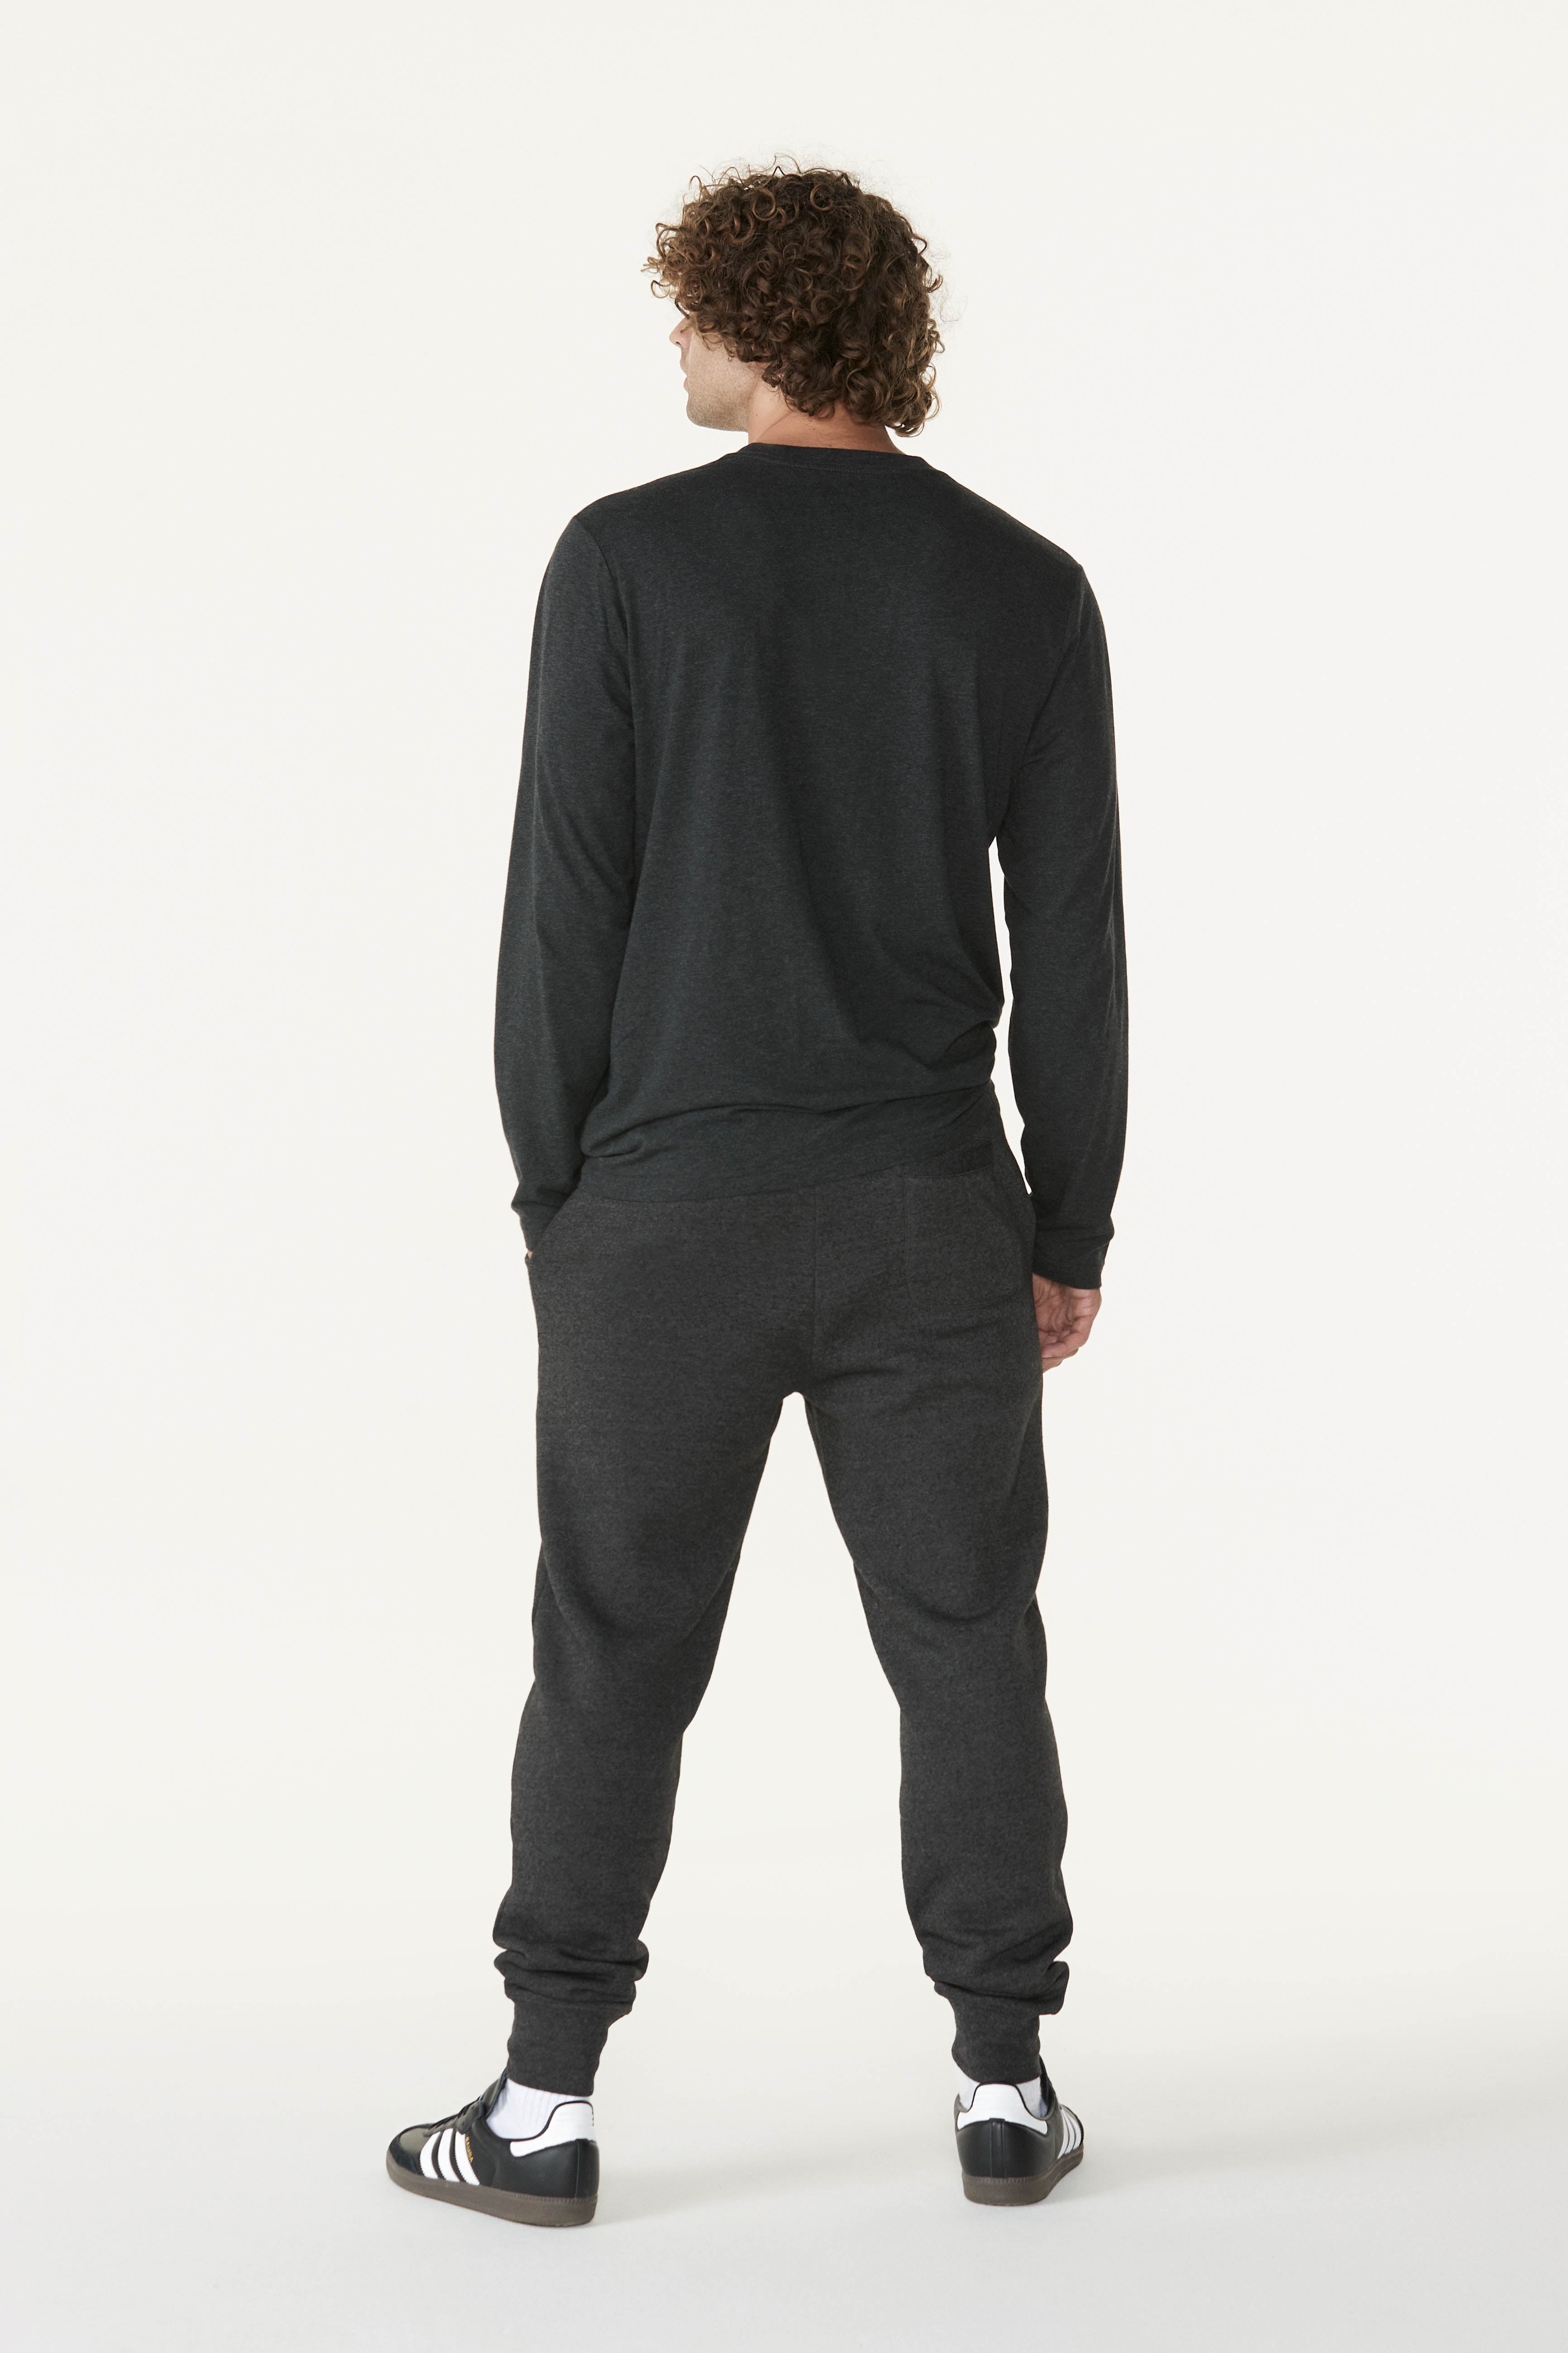 Sportiqe Men's Long Sleeve Comfy T-Shirt - Soft Jersey Knit